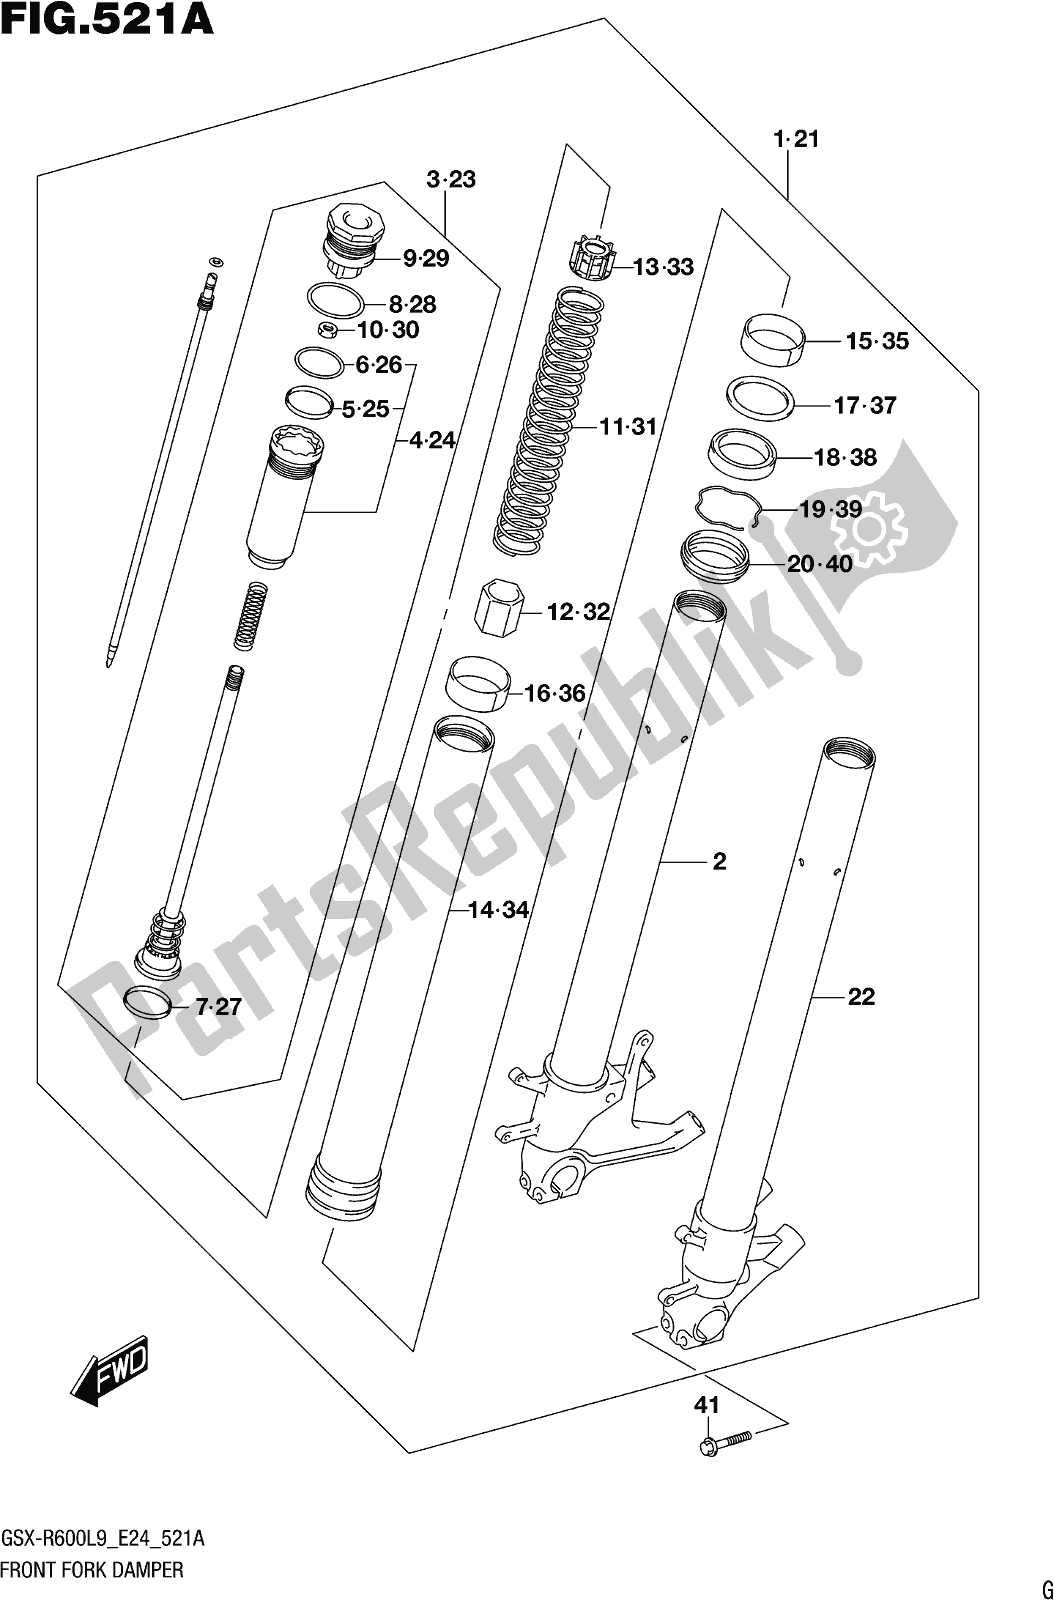 Toutes les pièces pour le Fig. 521a Front Fork Damper du Suzuki Gsx-r 600 2019